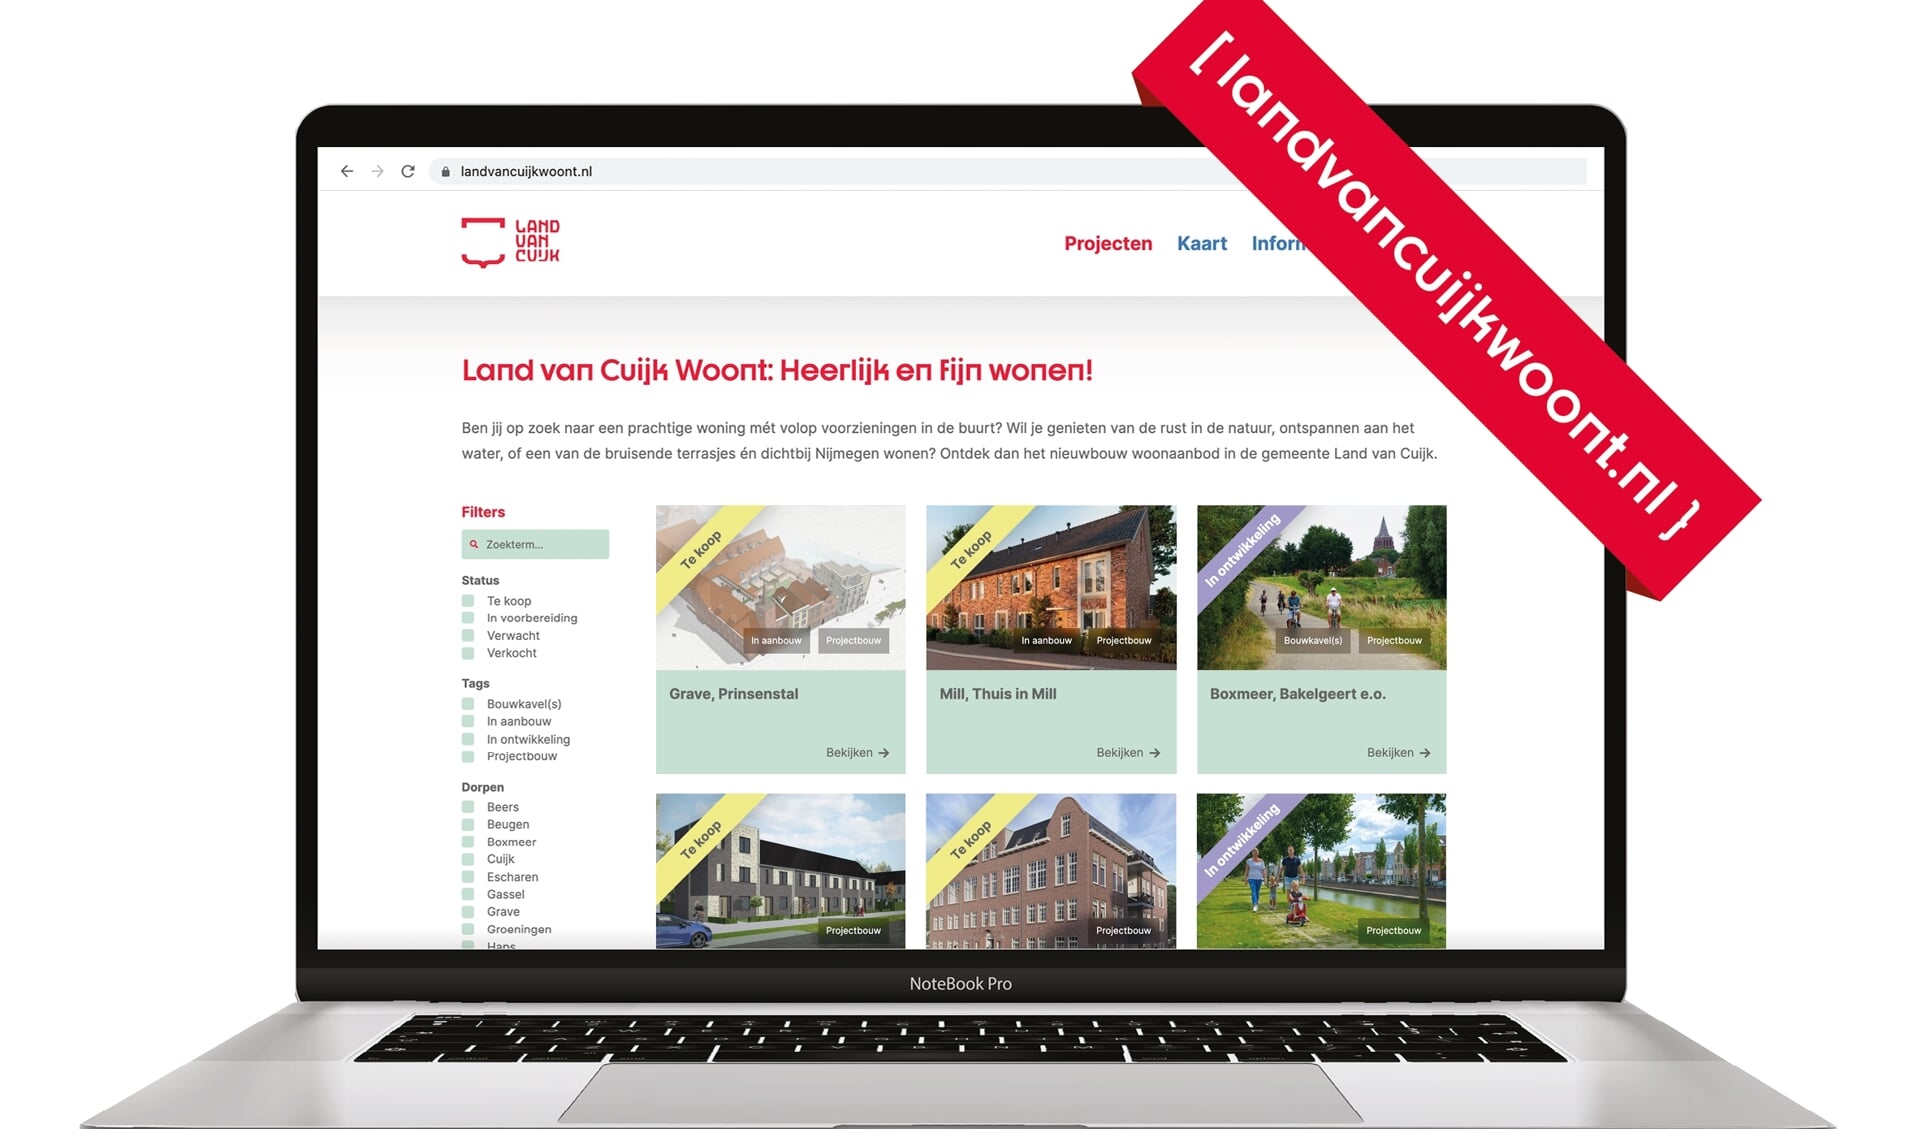 De gemeente Land van Cuijk heeft het online platform www.landvancuijkwoont.nl gelanceerd.